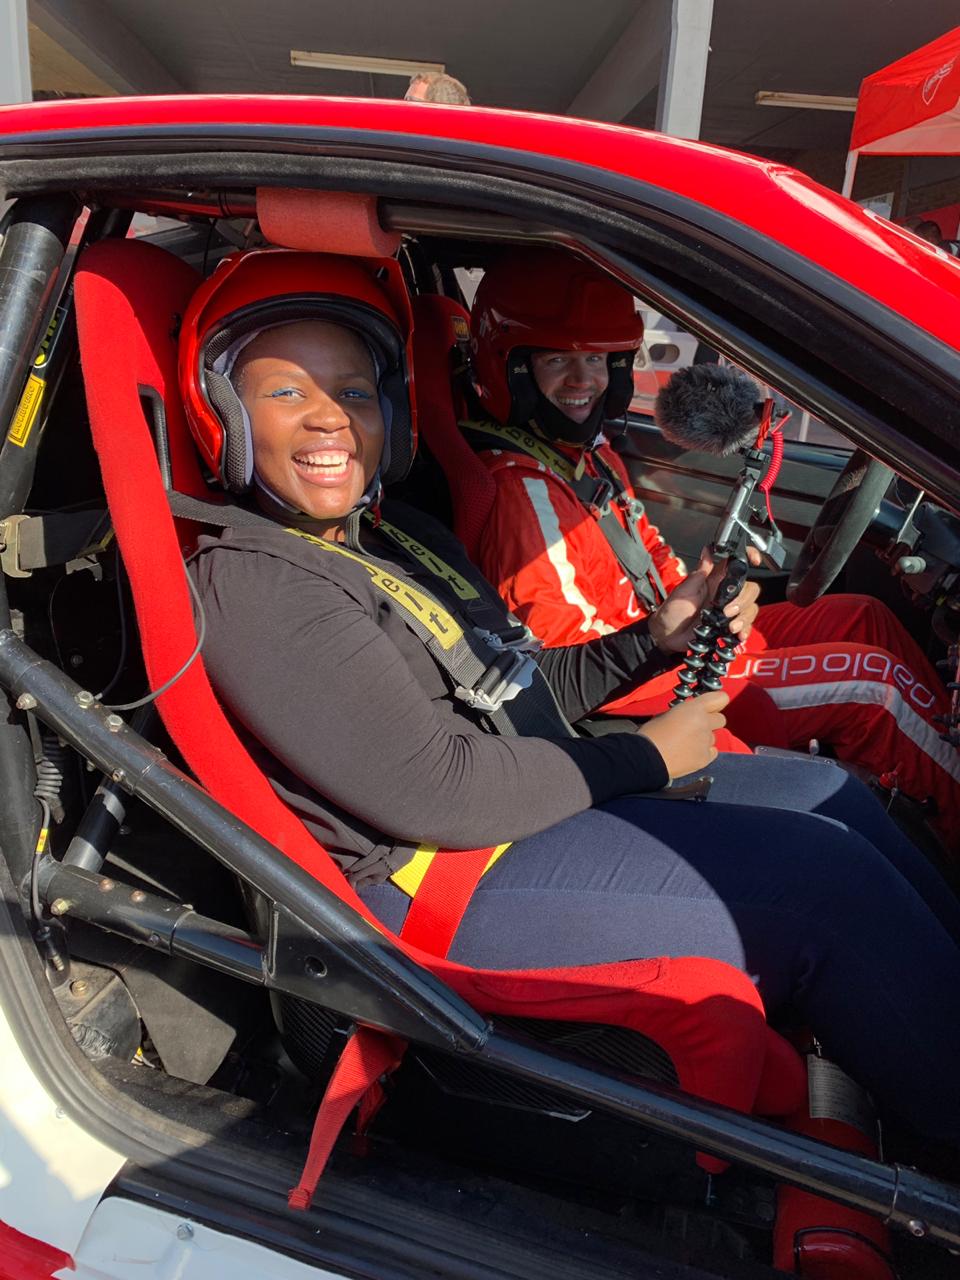 In a Ferrari